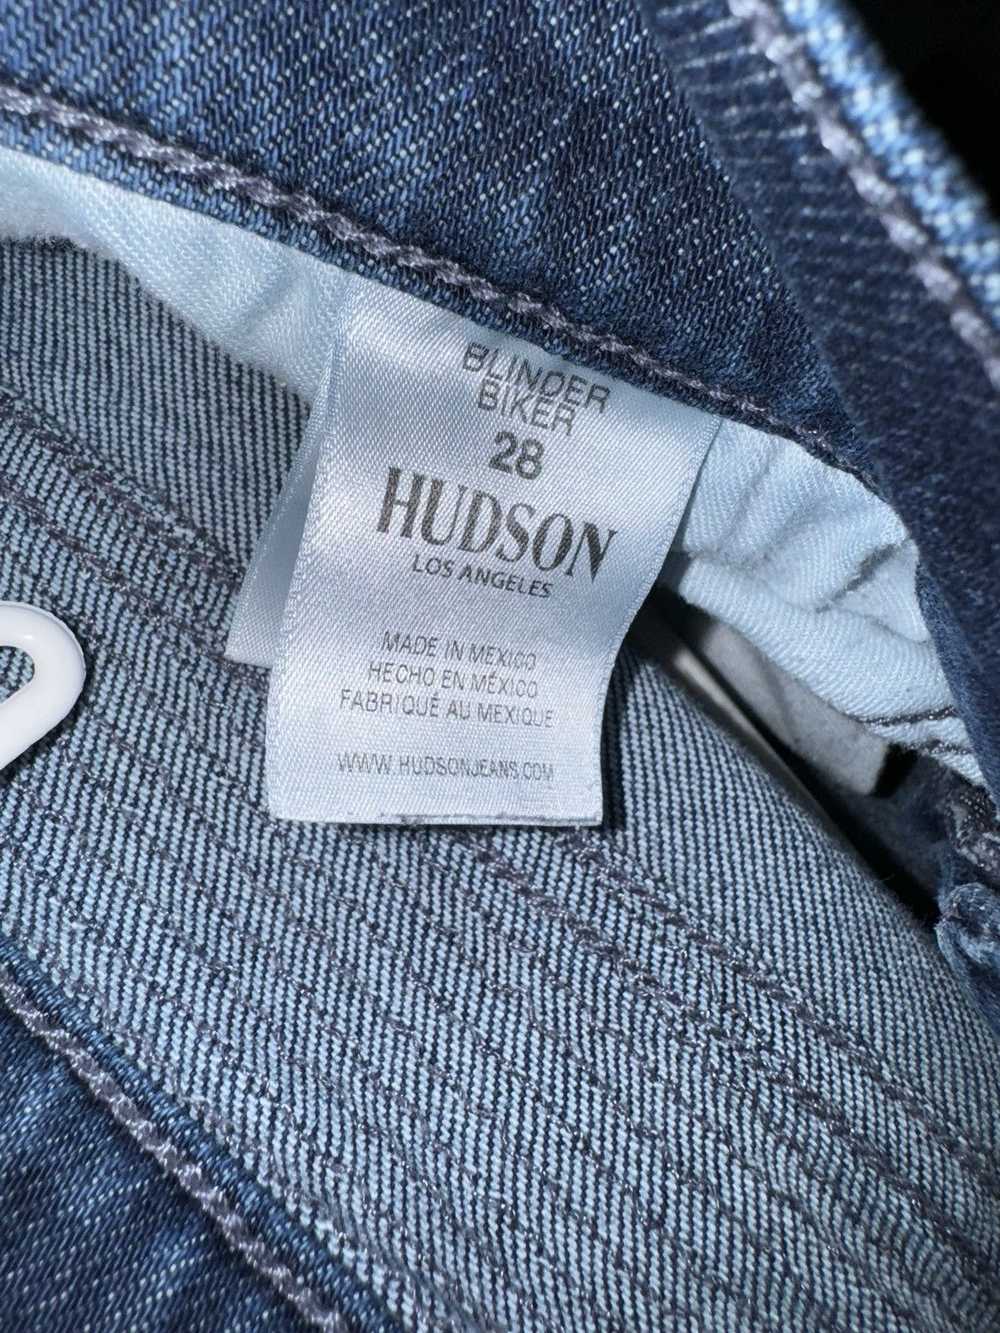 Hudson Hudson jeans - image 3